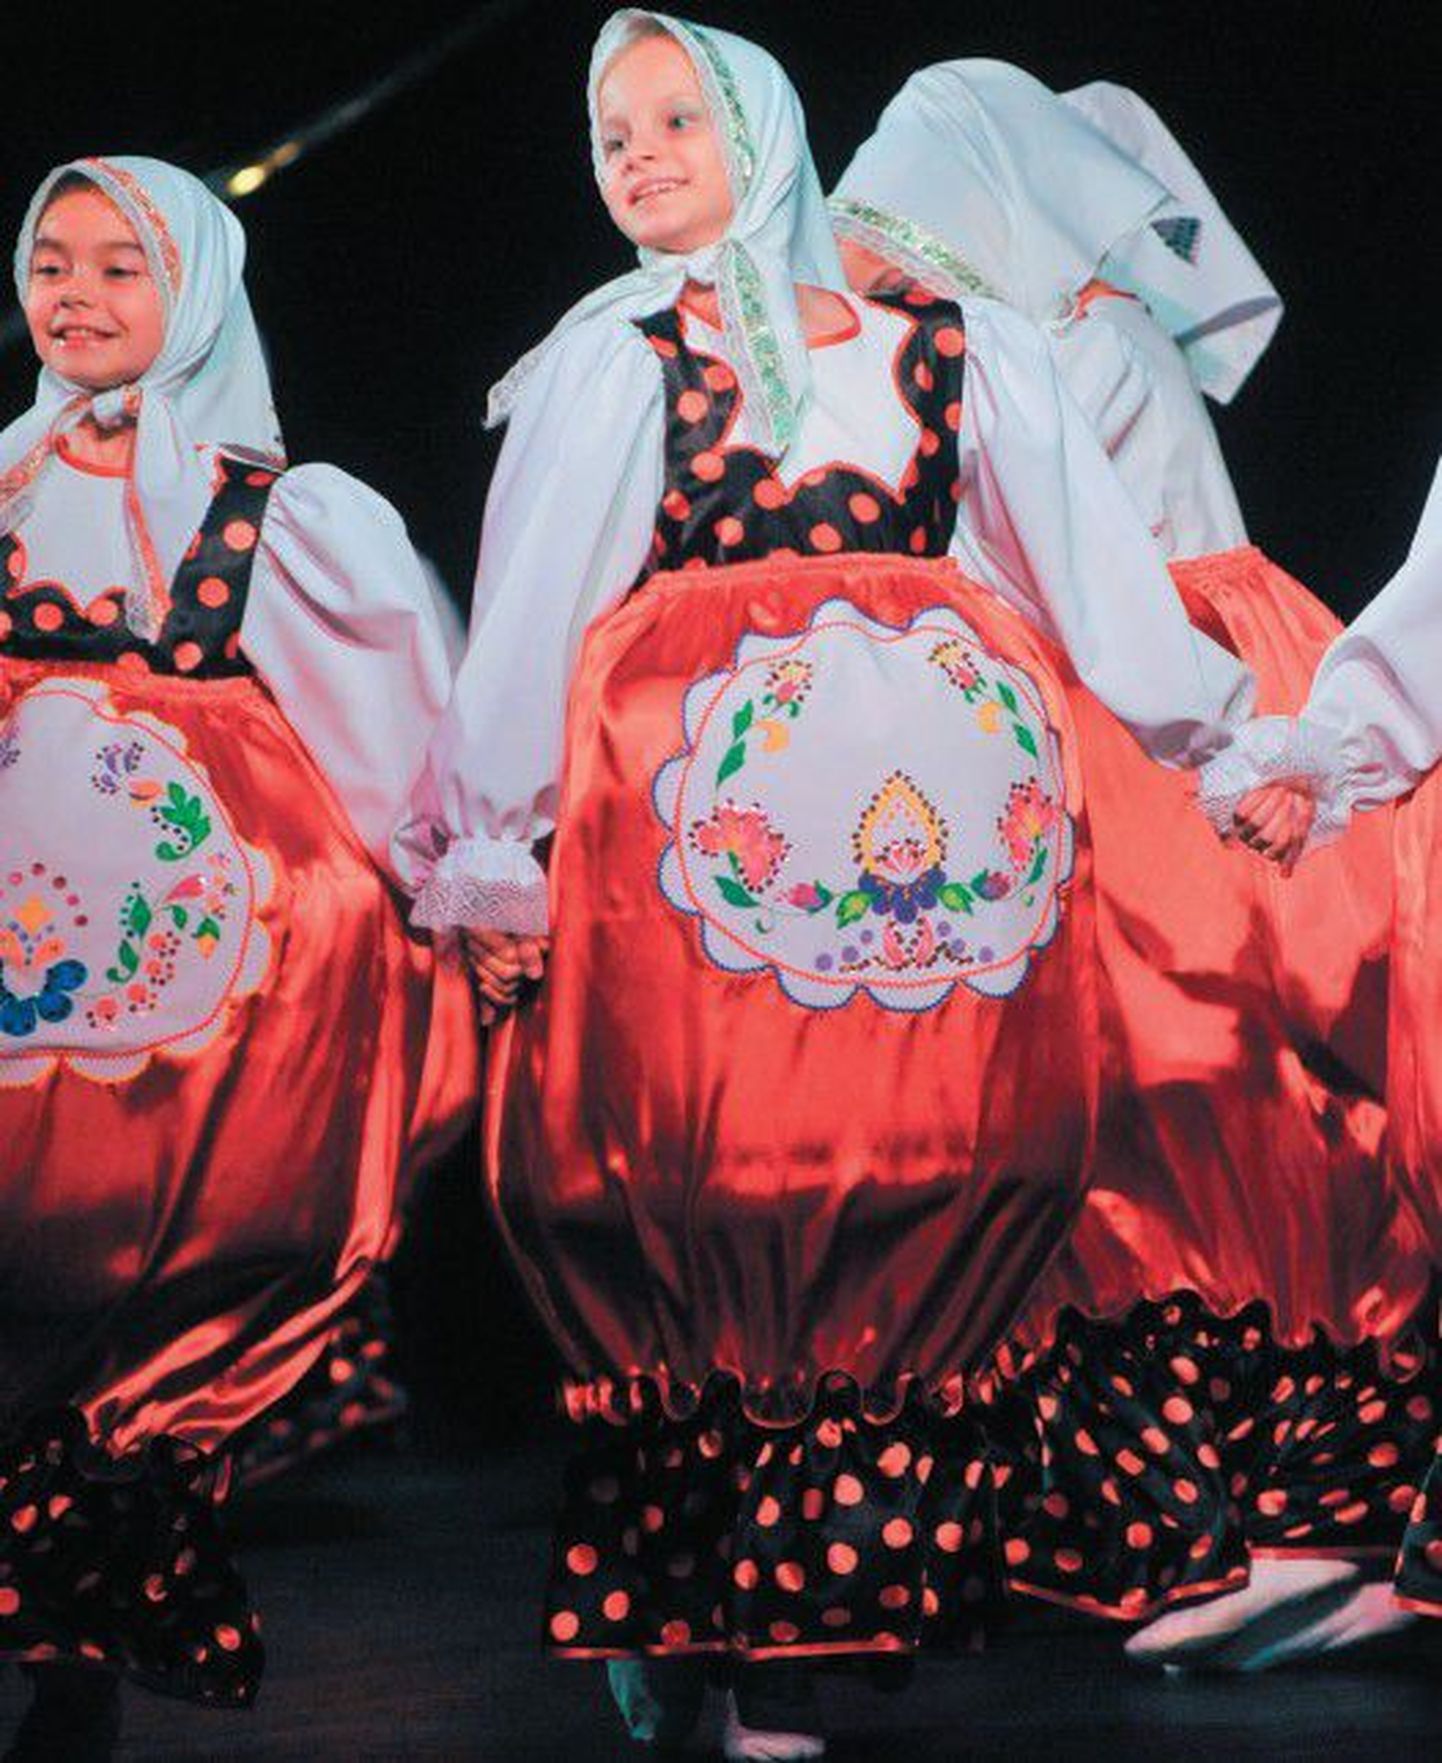 Известный танцевальный ансамбль «Непоседы» порадовал публику замечательным танцем матрешек и яркими оригинальными костюмами танцовщиц.